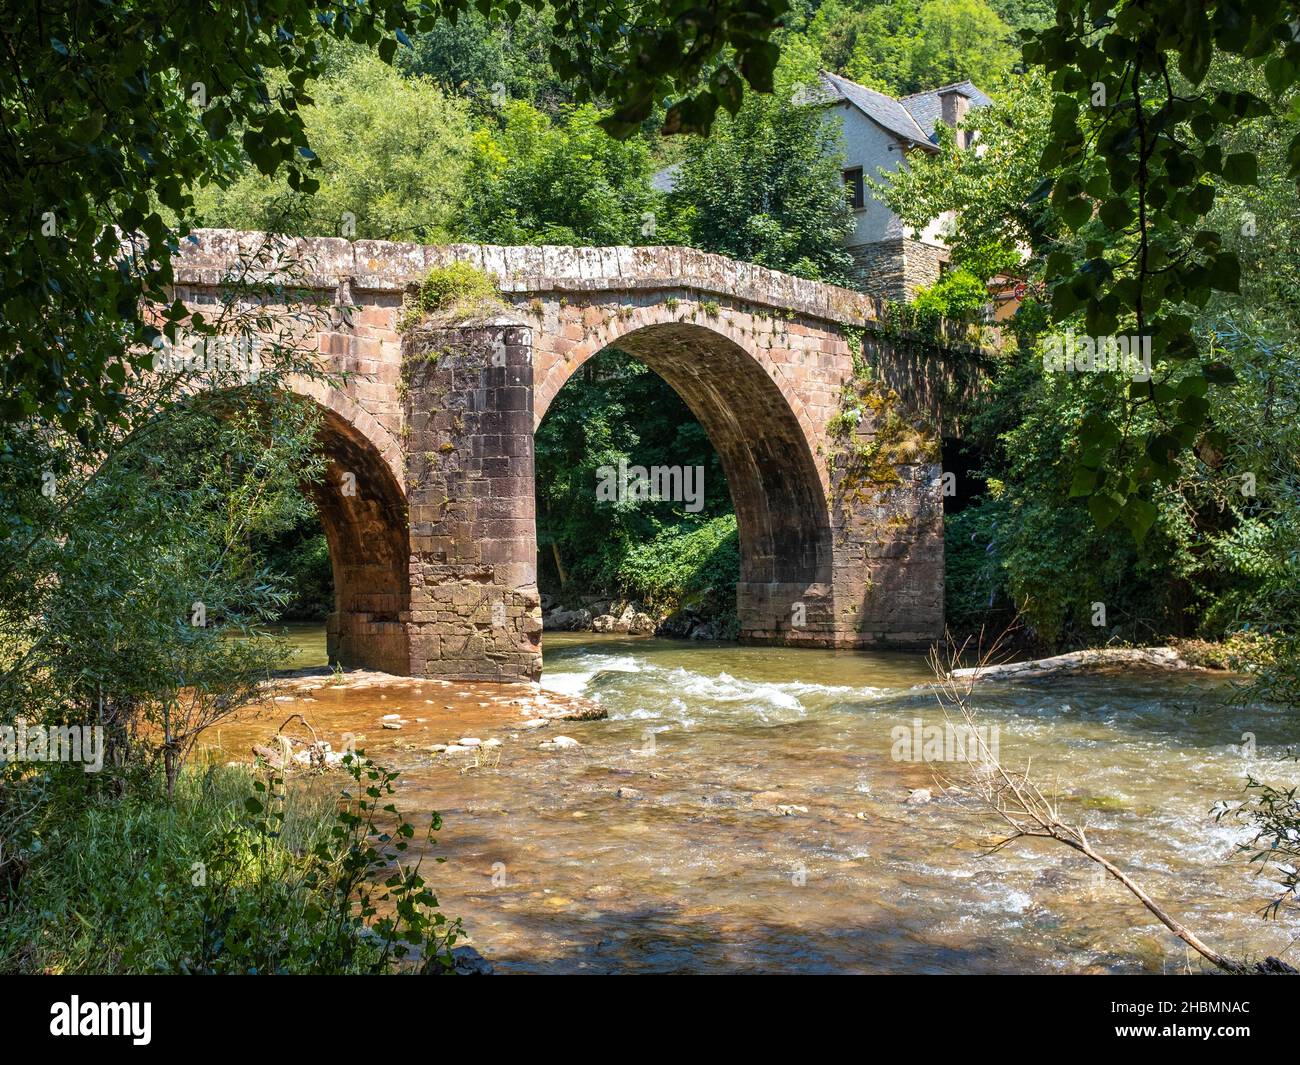 Pont romain en pierre de Conques sur le chemin de Saint-Jacques, traversant une petite rivière tumultueuse, prise sur un matin ensoleillé d'été, sans personne Banque D'Images